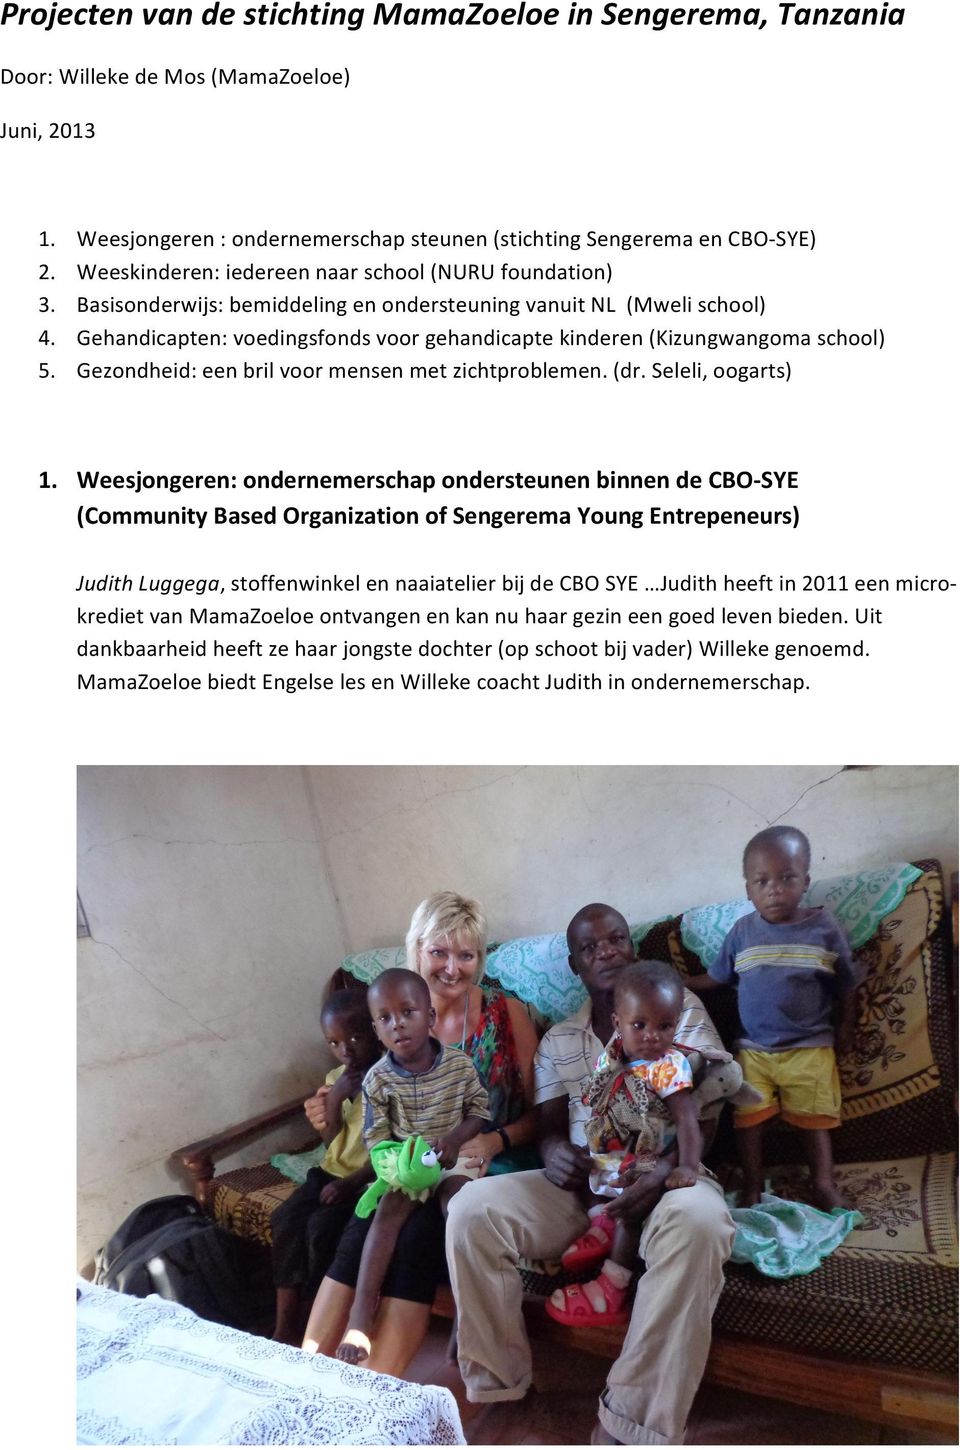 Gehandicapten: voedingsfonds voor gehandicapte kinderen (Kizungwangoma school) 5. Gezondheid: een bril voor mensen met zichtproblemen. (dr. Seleli, oogarts) 1.